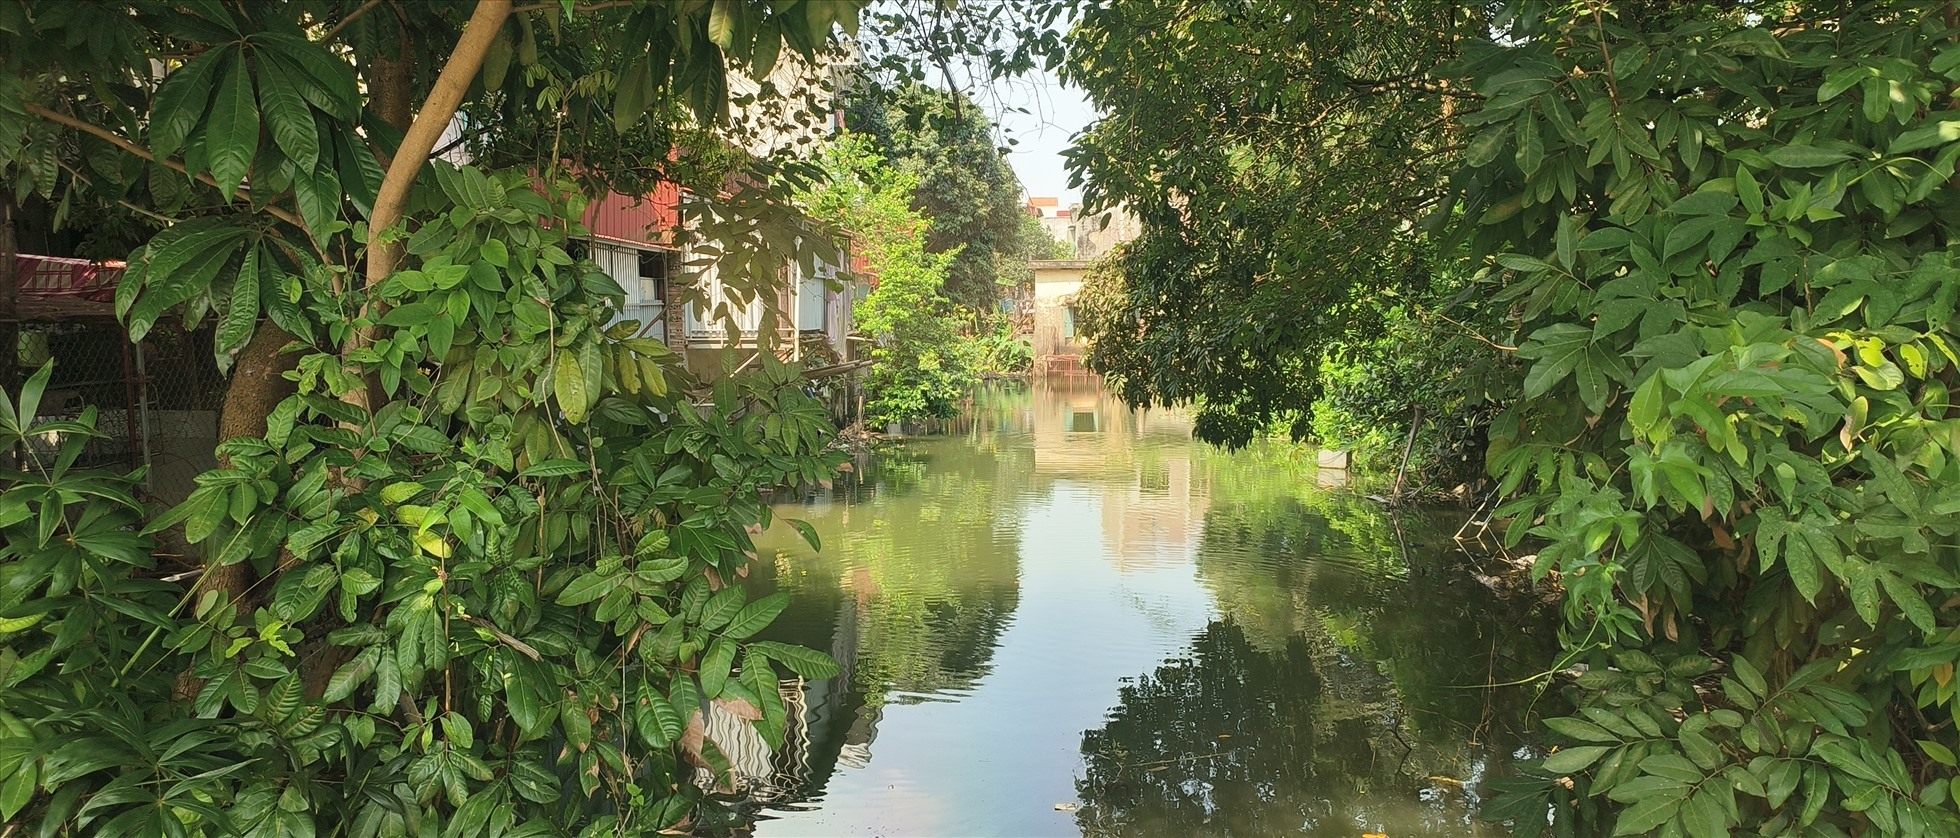 Điểm đầu kênh tưới trạm bơm Quỳnh Hải nối vào sông Yên Lộng (thường gọi sông Cầu Tây). Ảnh: Trung Du